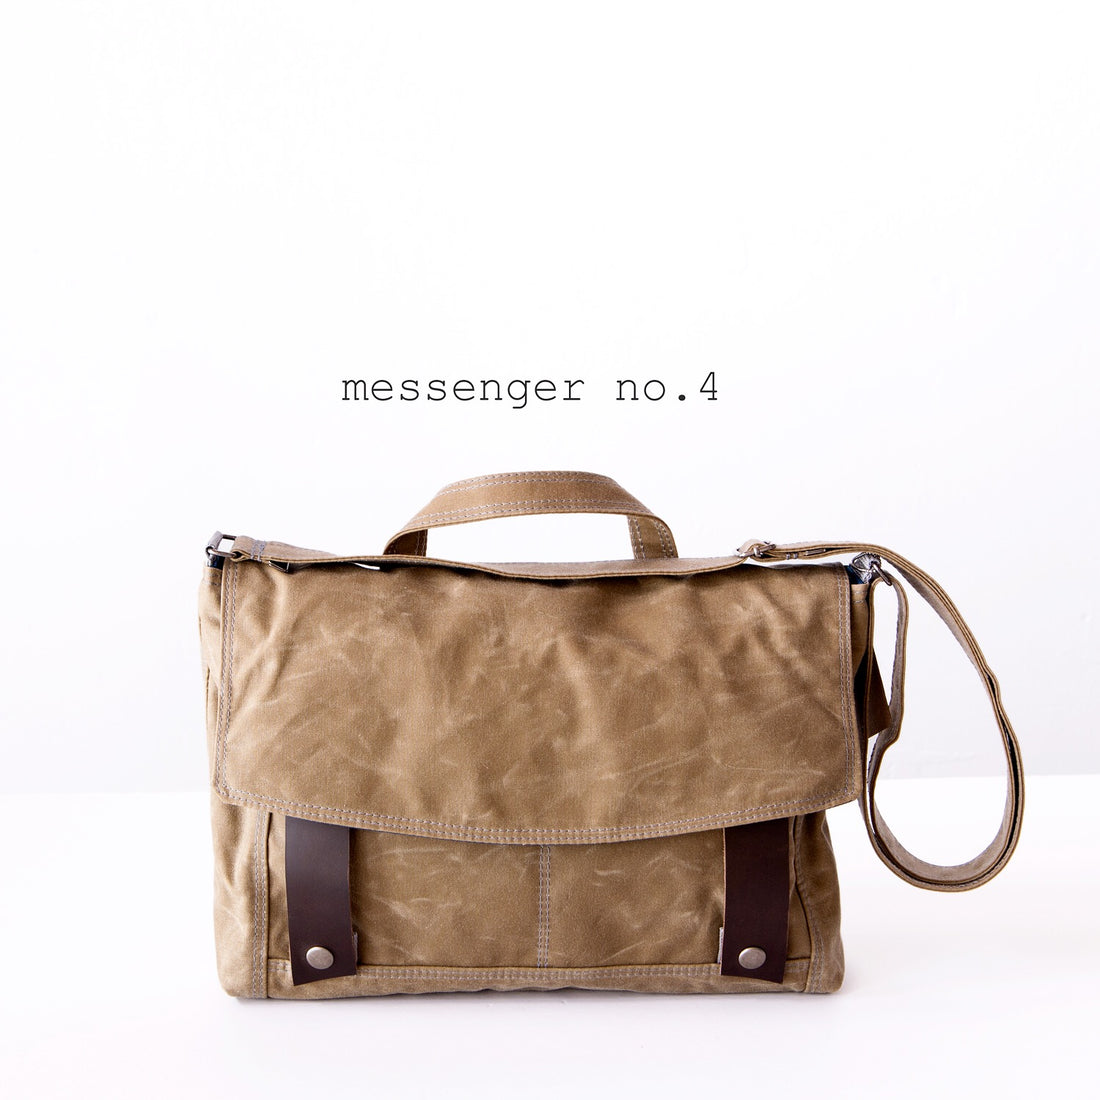 Messenger no. 4